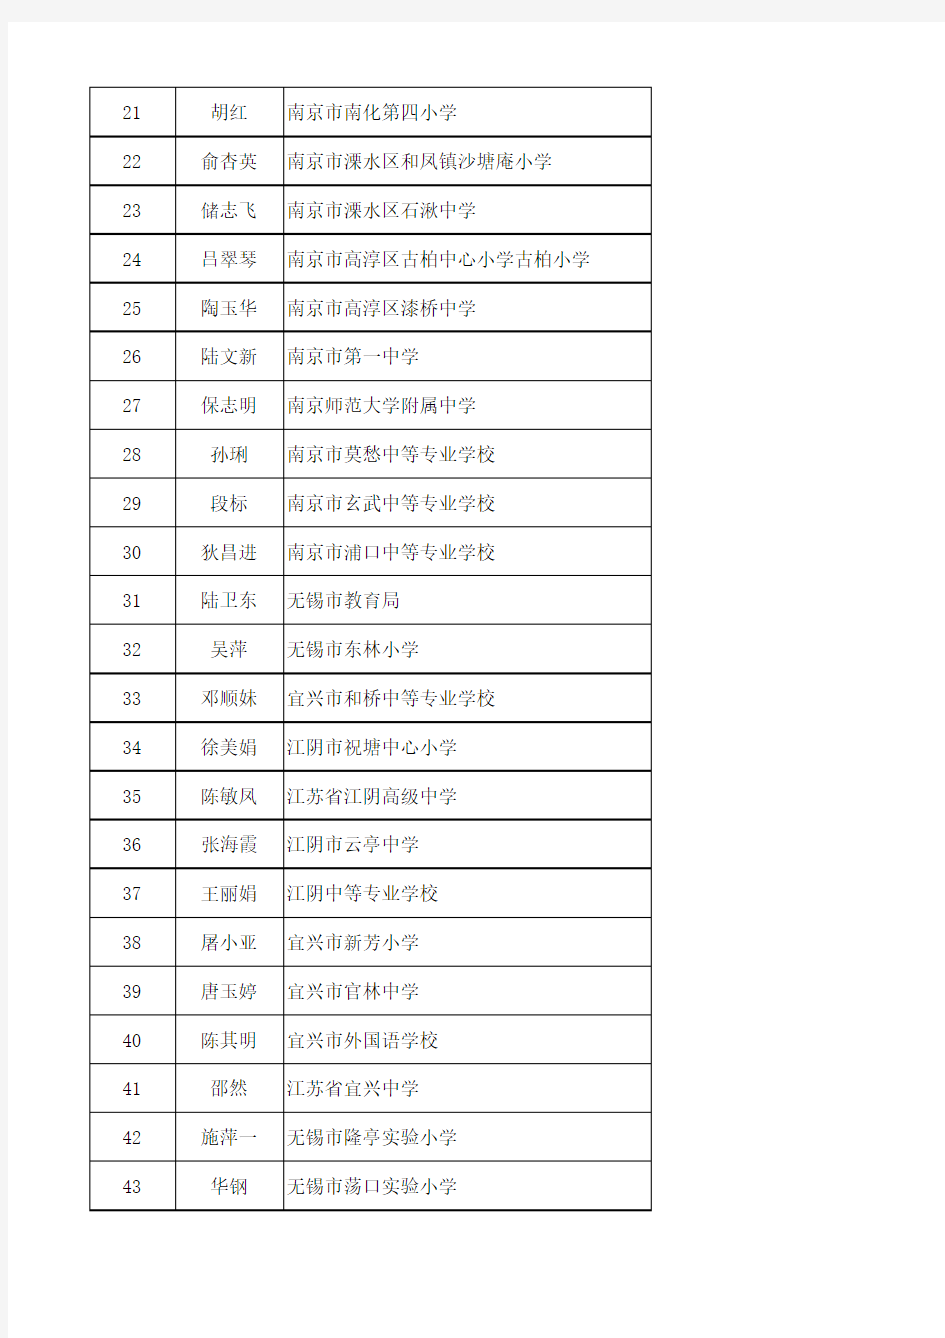 全国优秀教师、全国优秀教育工作者正式推荐对象和江苏省优秀教育工作者拟表彰对象名单